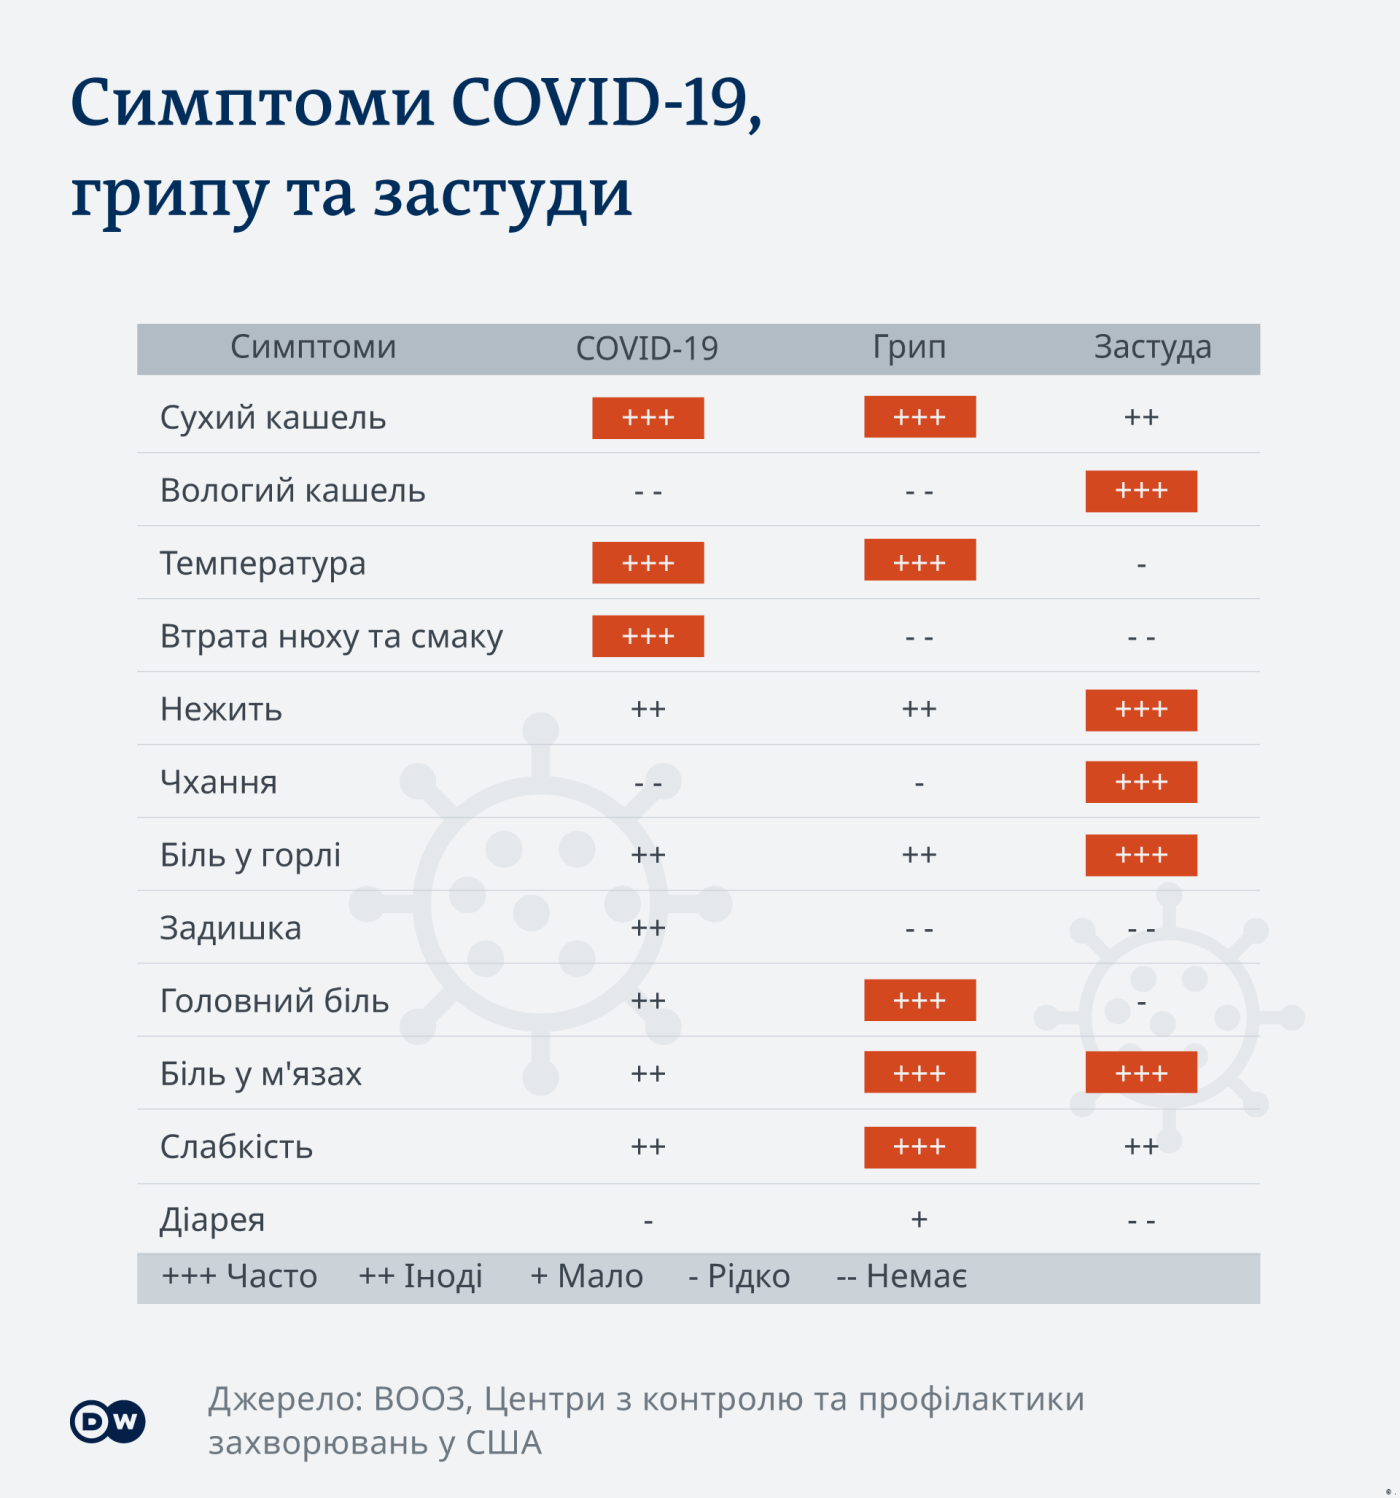 "Одним коронавірус принесе легке недомагання – іншим дістанеться на повну": історії чернігівців, що побороли COVID-19